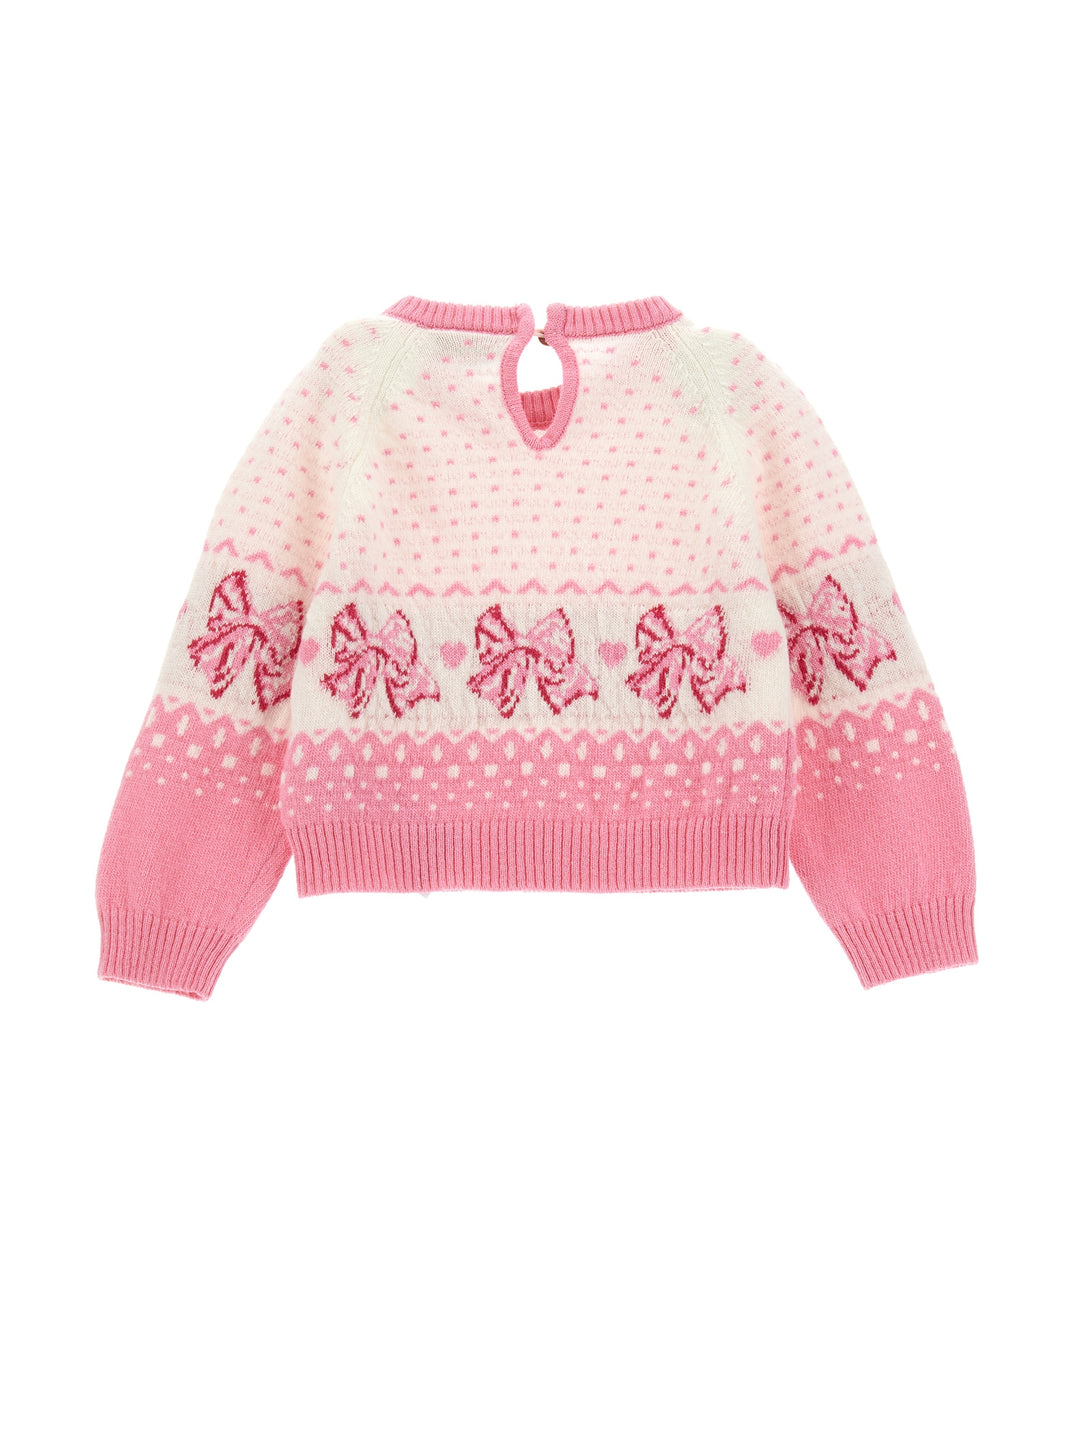 Maglione rosa neonata con ricami